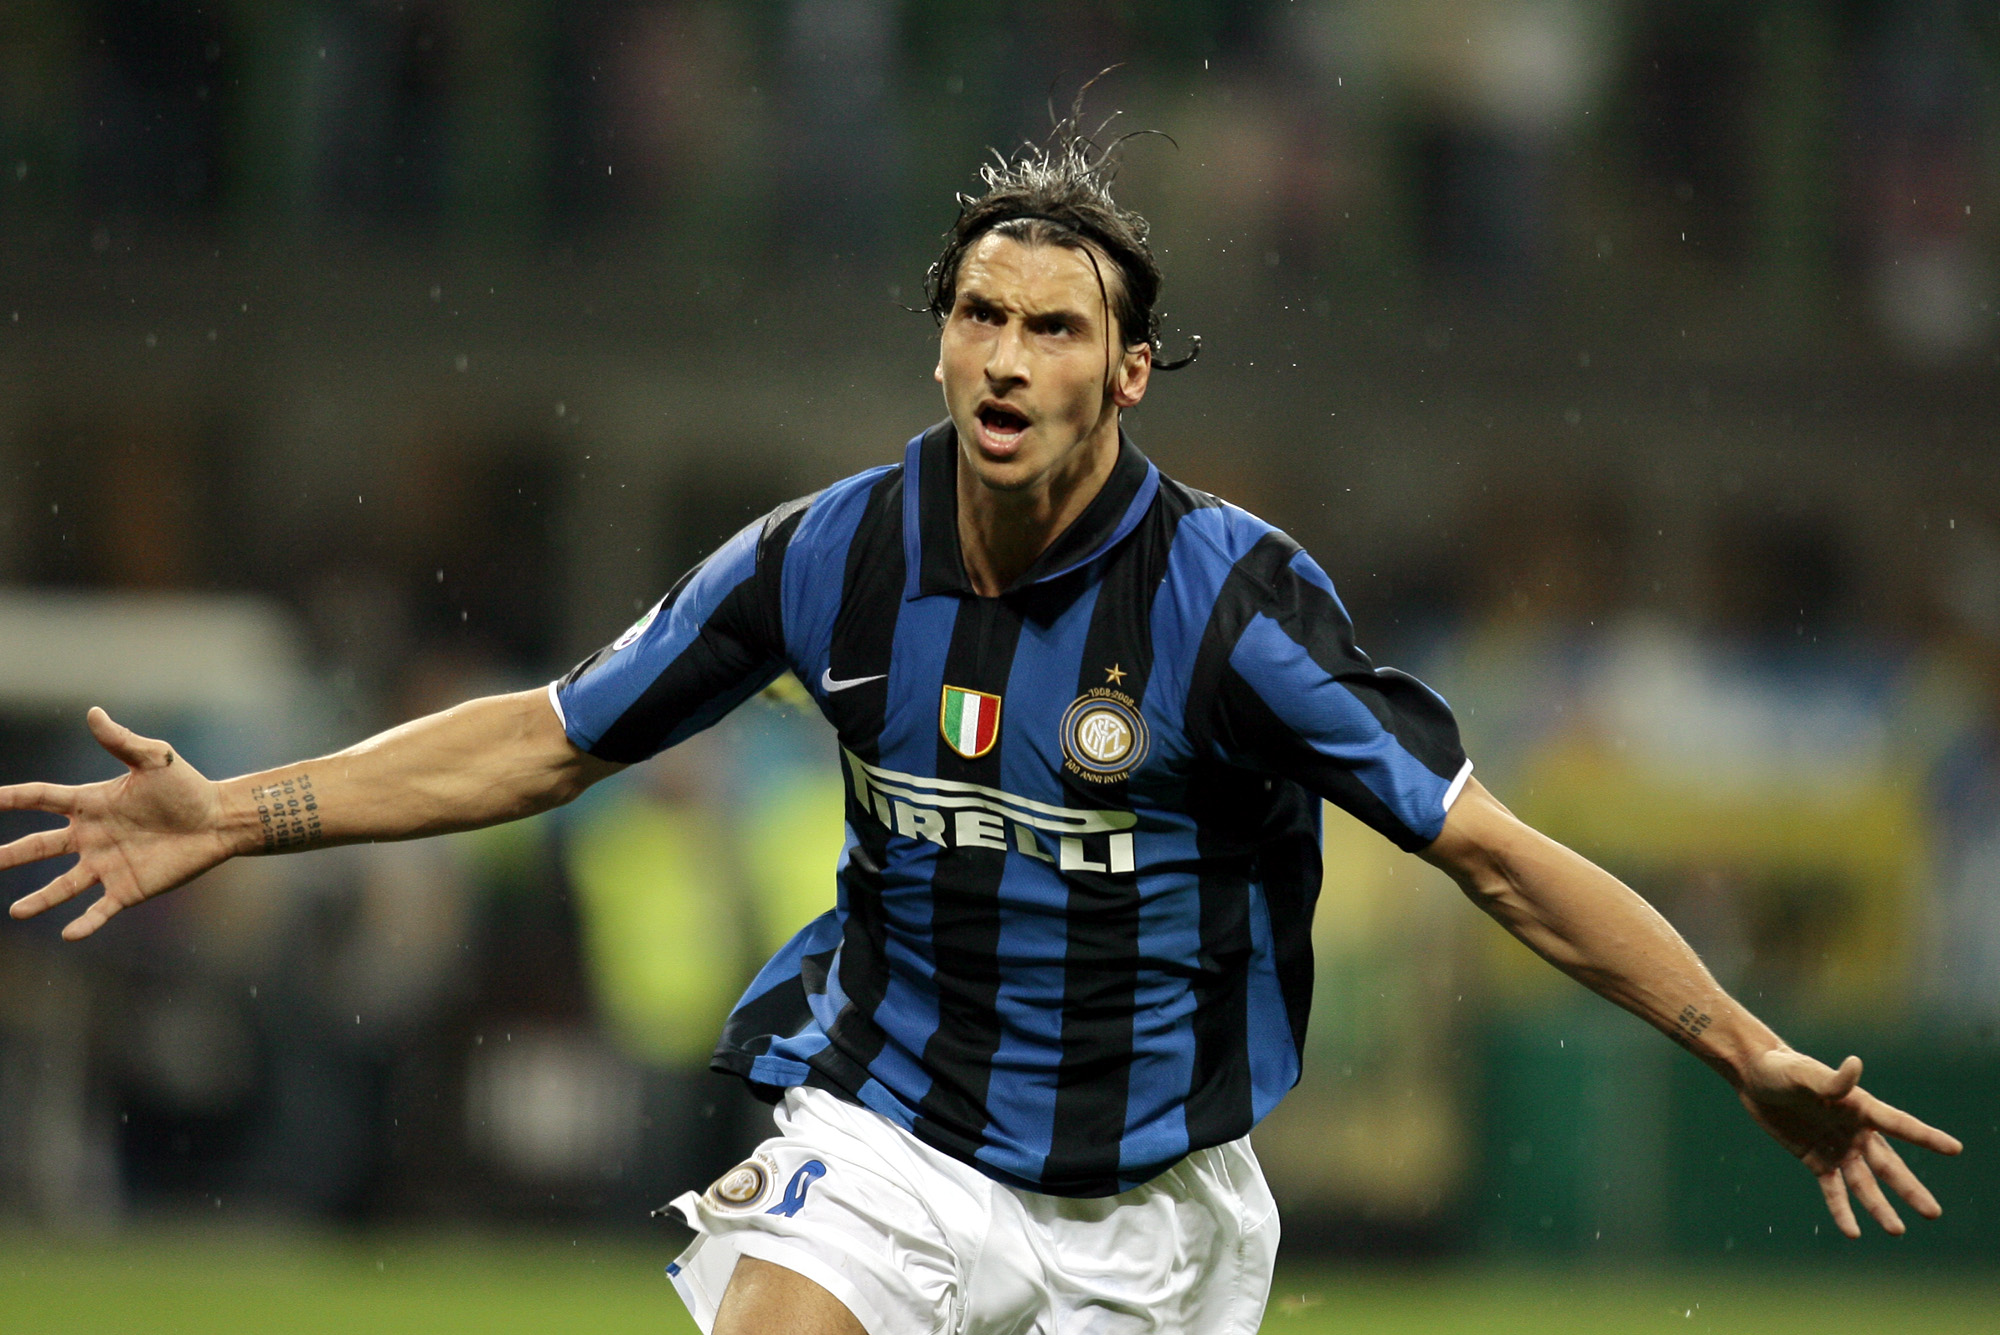 Det var tiden i Inter som lade grunden för legenden om Zlatan Ibrahimovic.